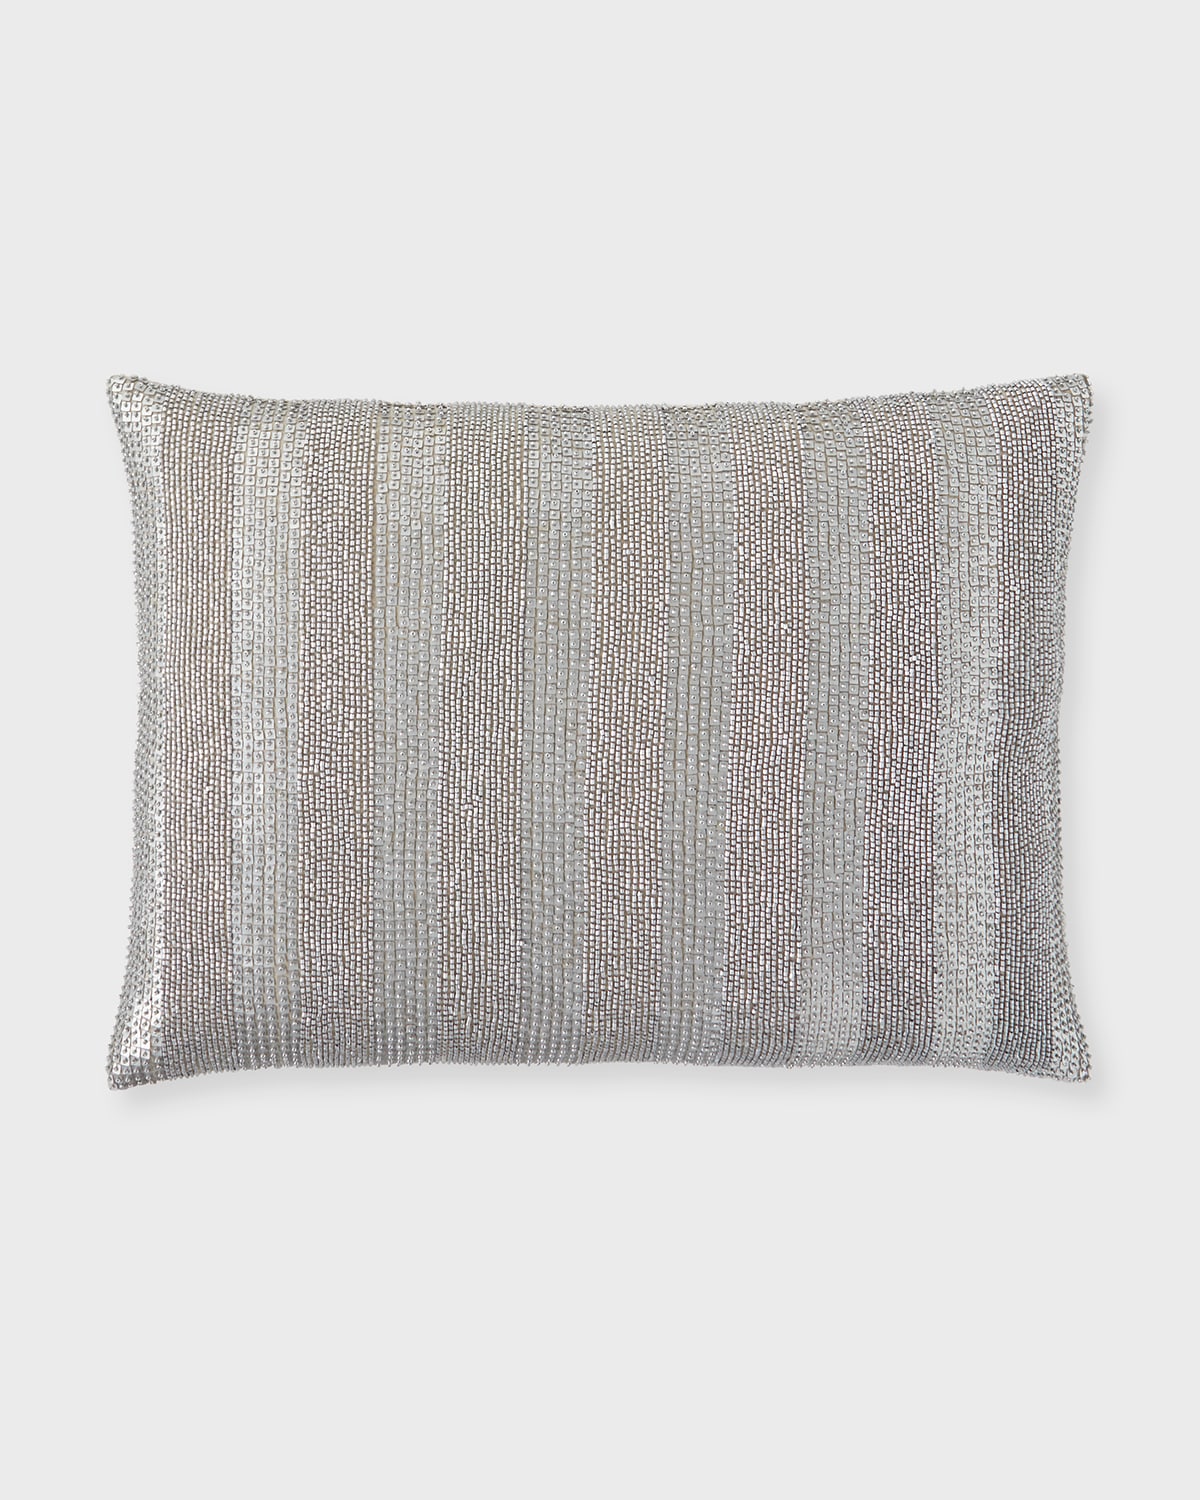 Callisto Tiles Indoor Decorative Pillow